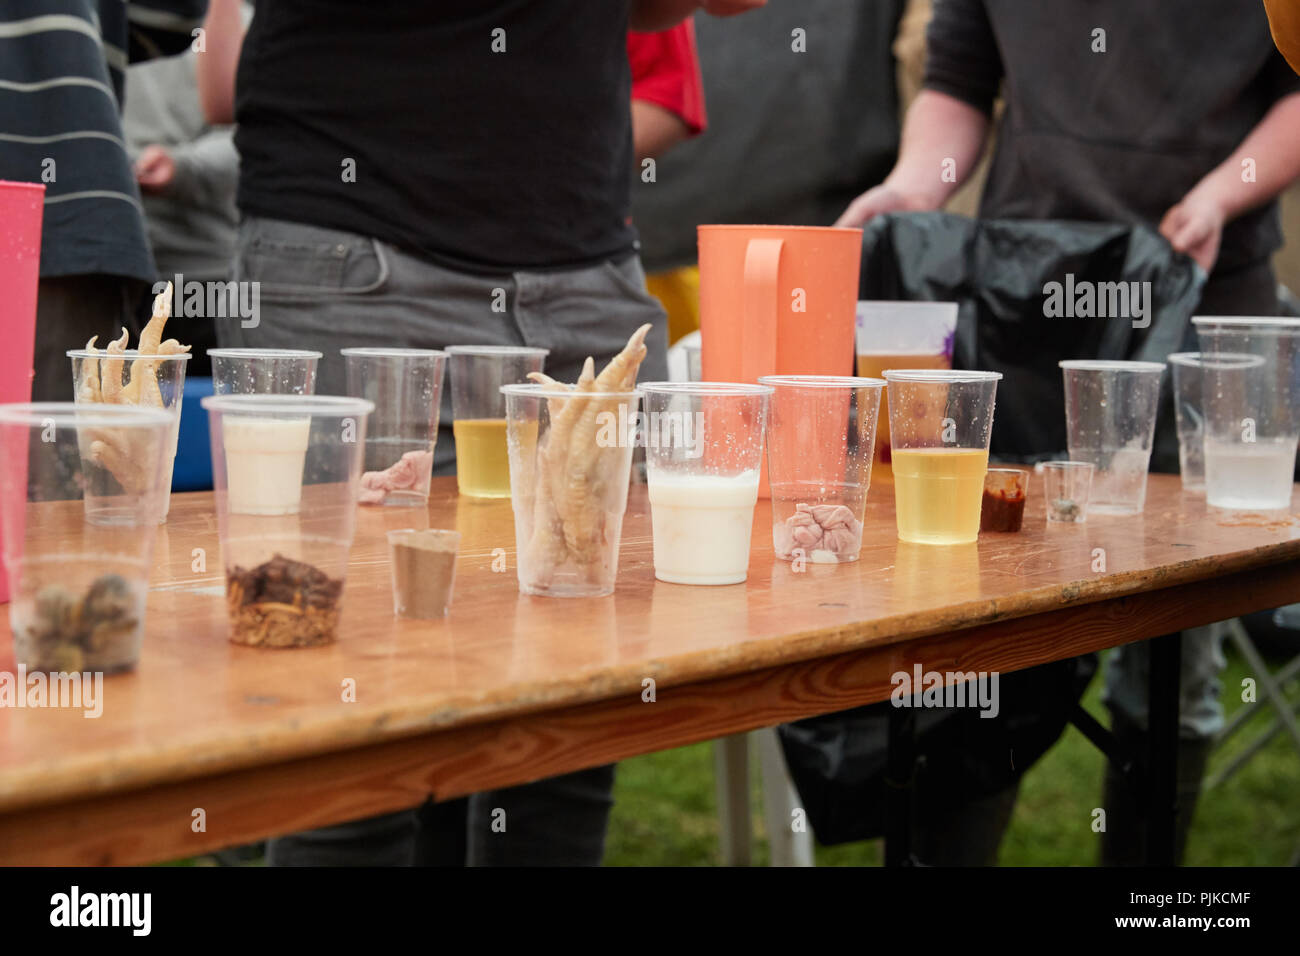 Vasos de plástico transparente que contienen alimentos repugnante para un concurso de comer desafío en la llanura juegos, Thorney, Somerset, Inglaterra Foto de stock